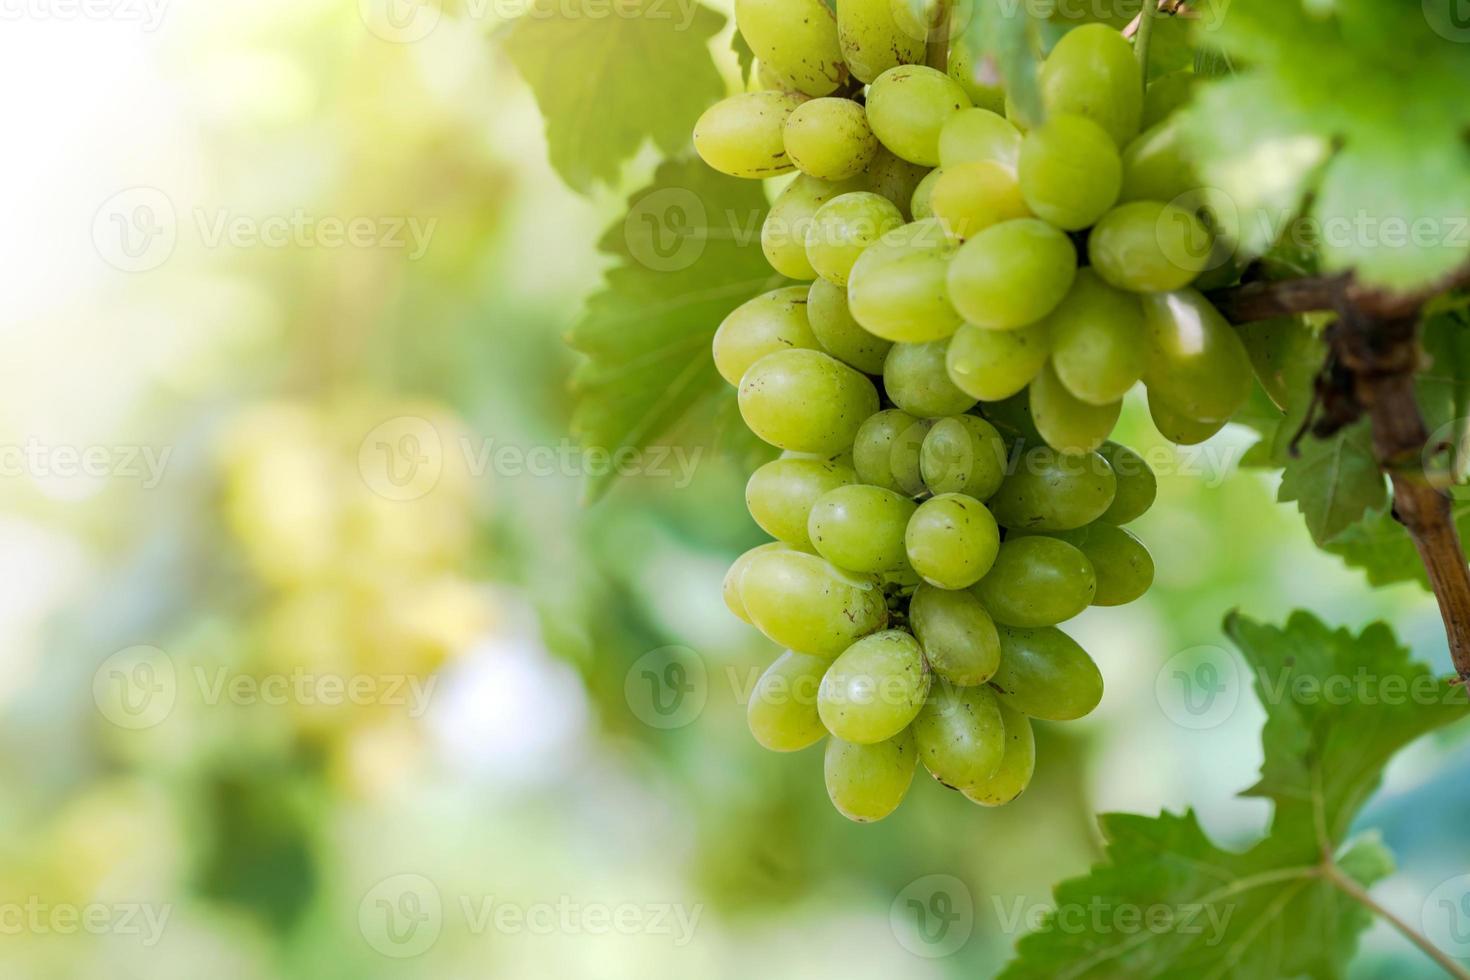 wijngaard met witte wijndruiven op het platteland, zonnige druiventrossen hangen aan de wijnstok foto